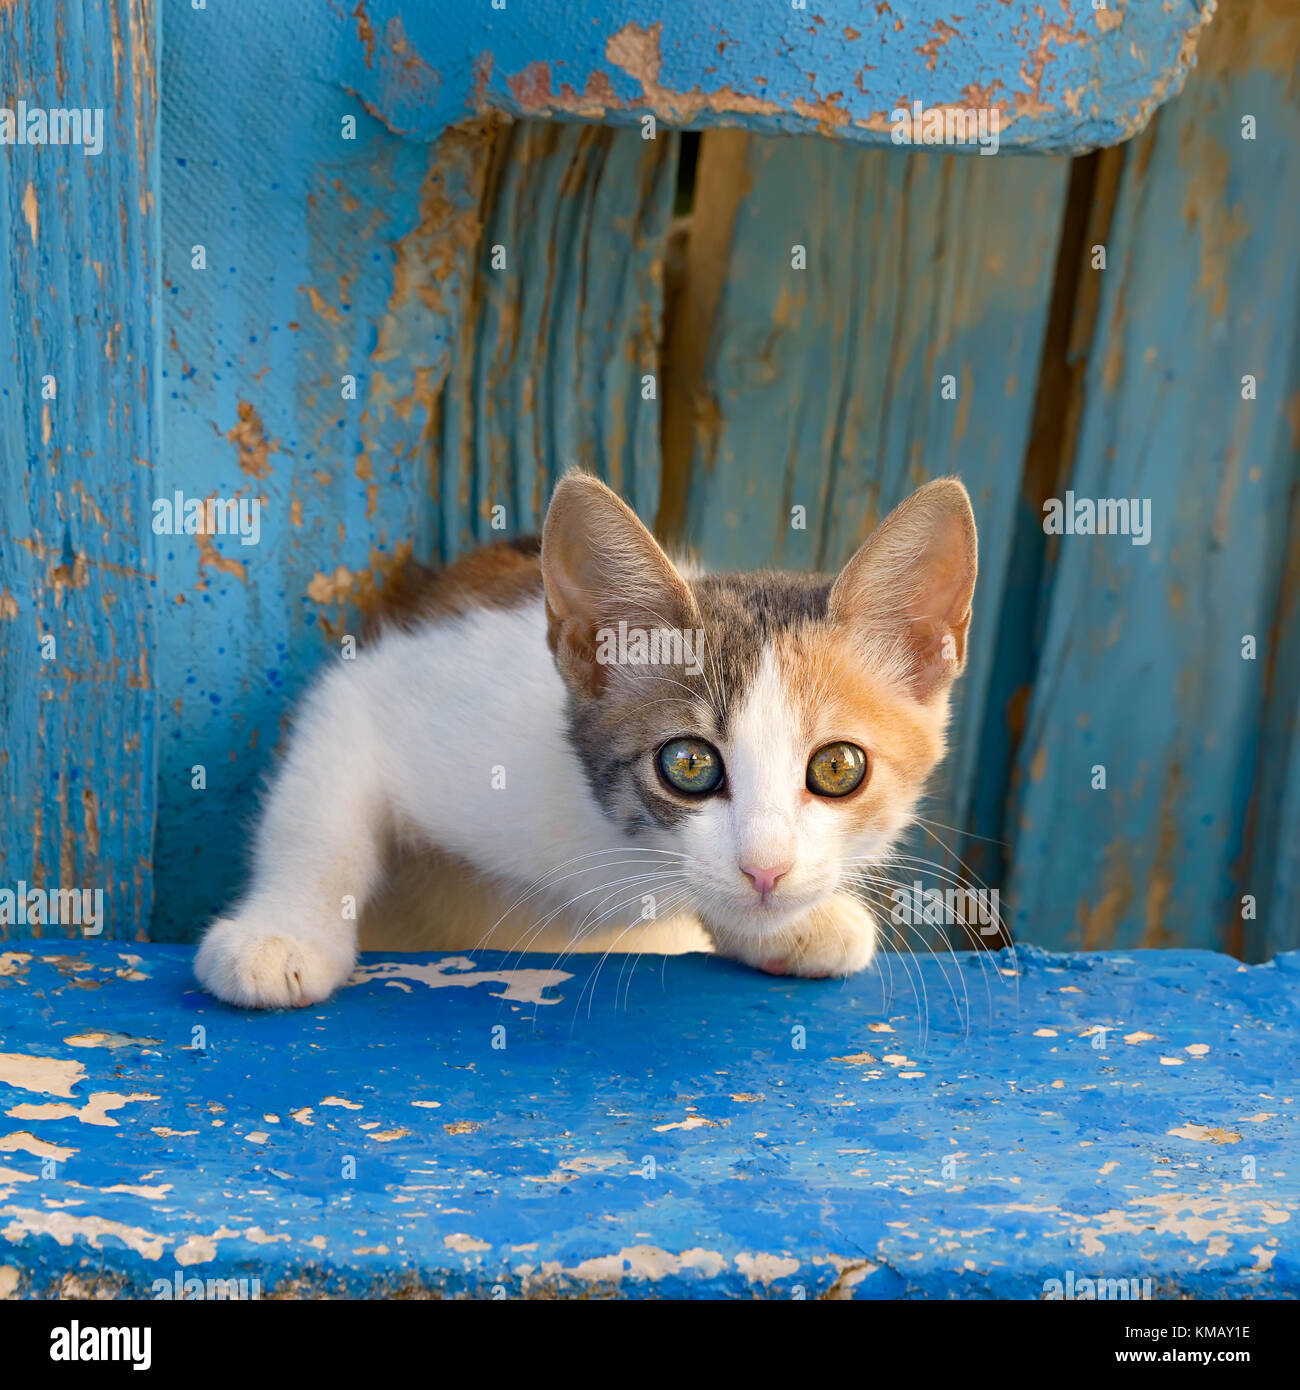 Un mignon jeune chat chaton se profile à partir d'une vieille porte en bois bleu avec des yeux curieux, un chat avec ce manteau particolored appelée calico dilué. Banque D'Images